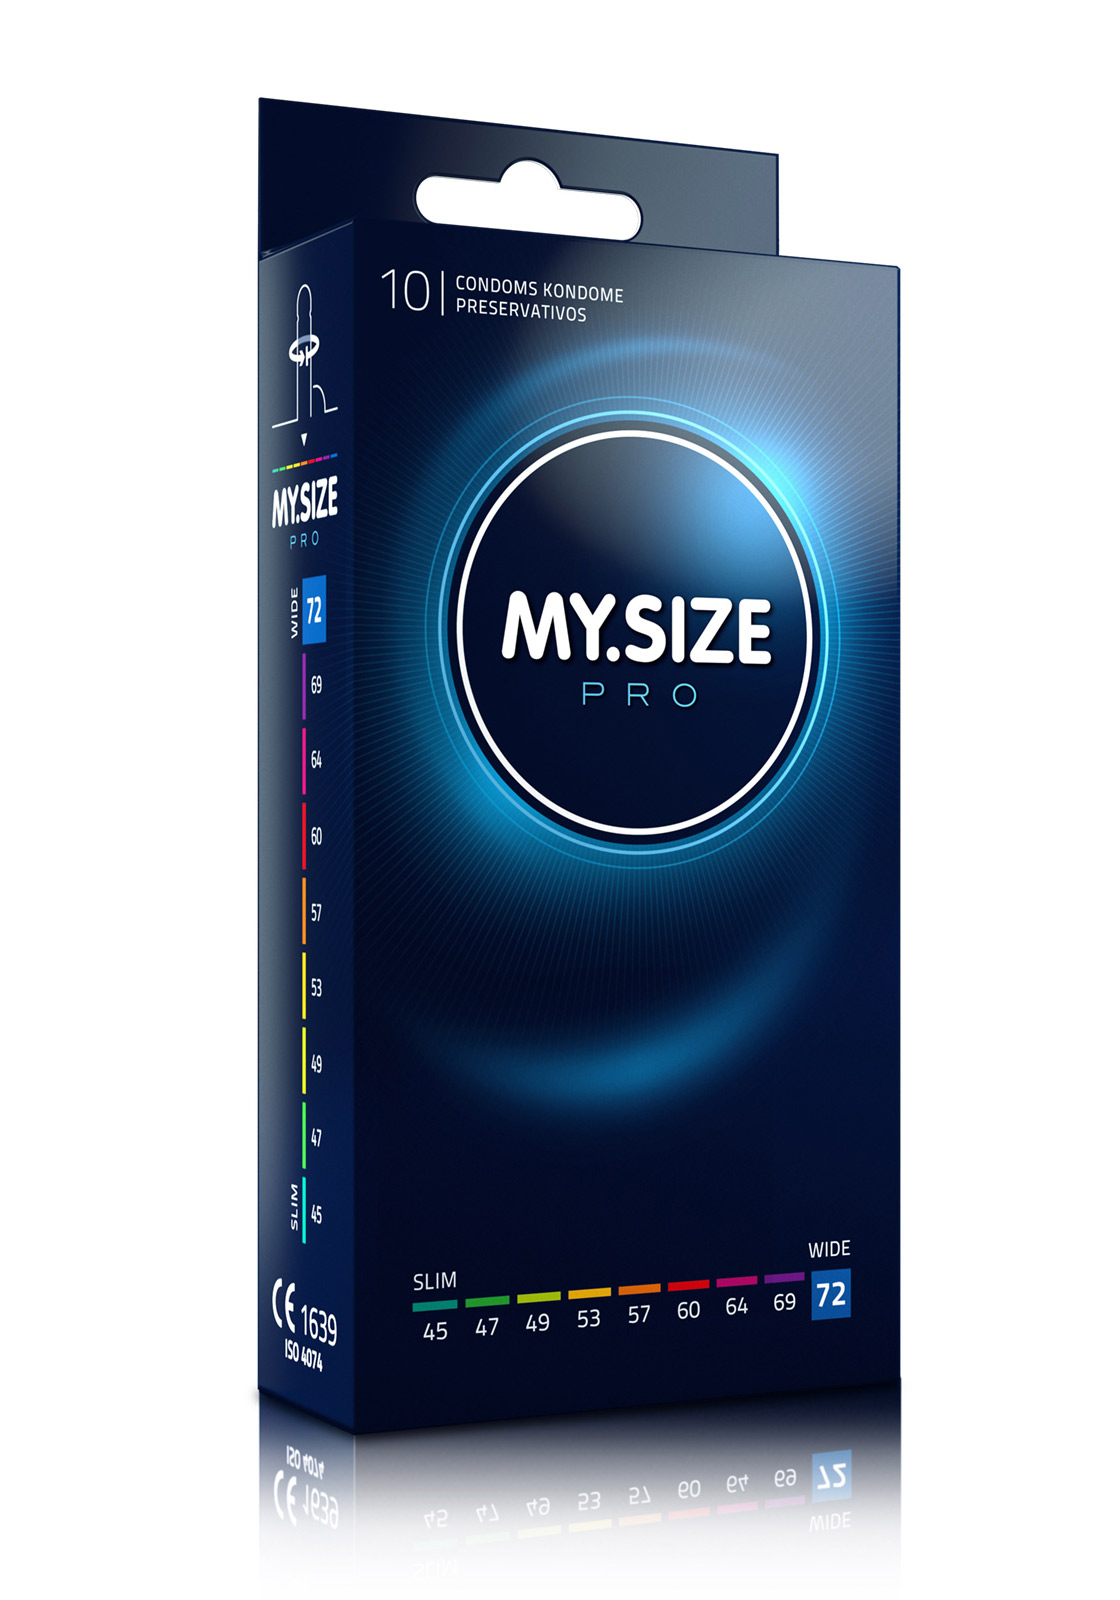 My.Size Pro: Kondome - Größe 72